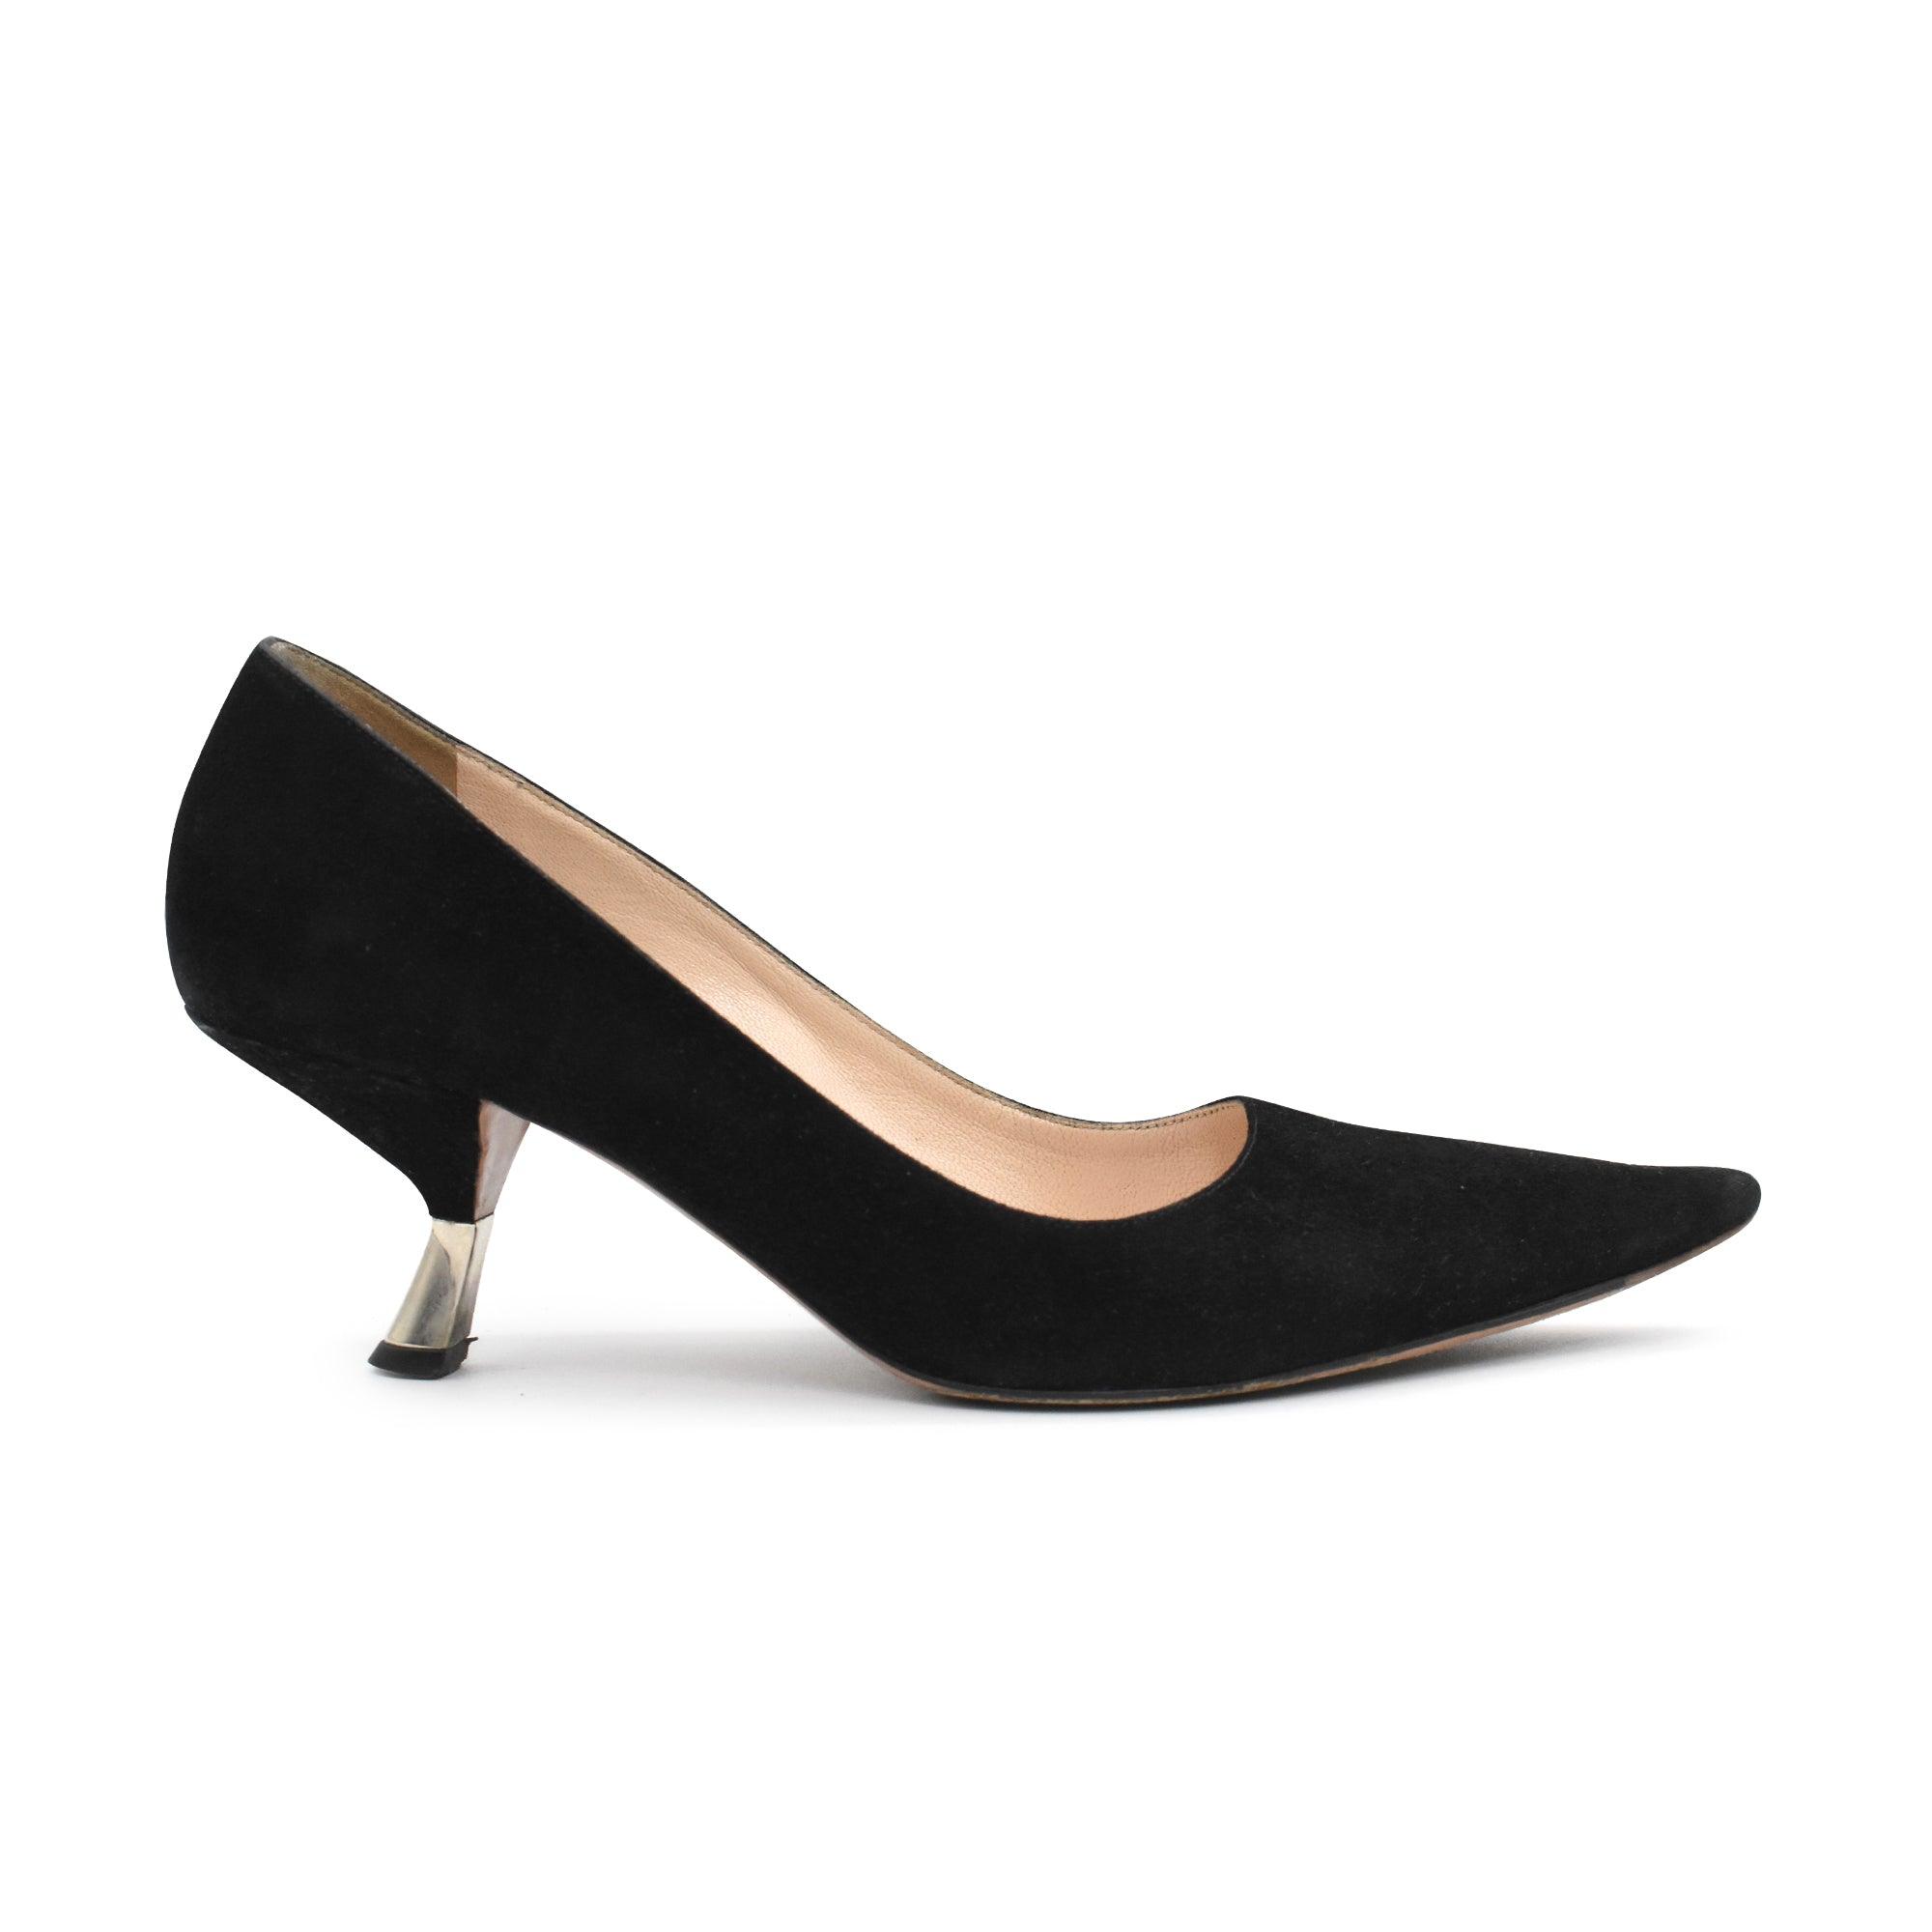 Prada Kitten Heels - Women's 35.5 - Fashionably Yours